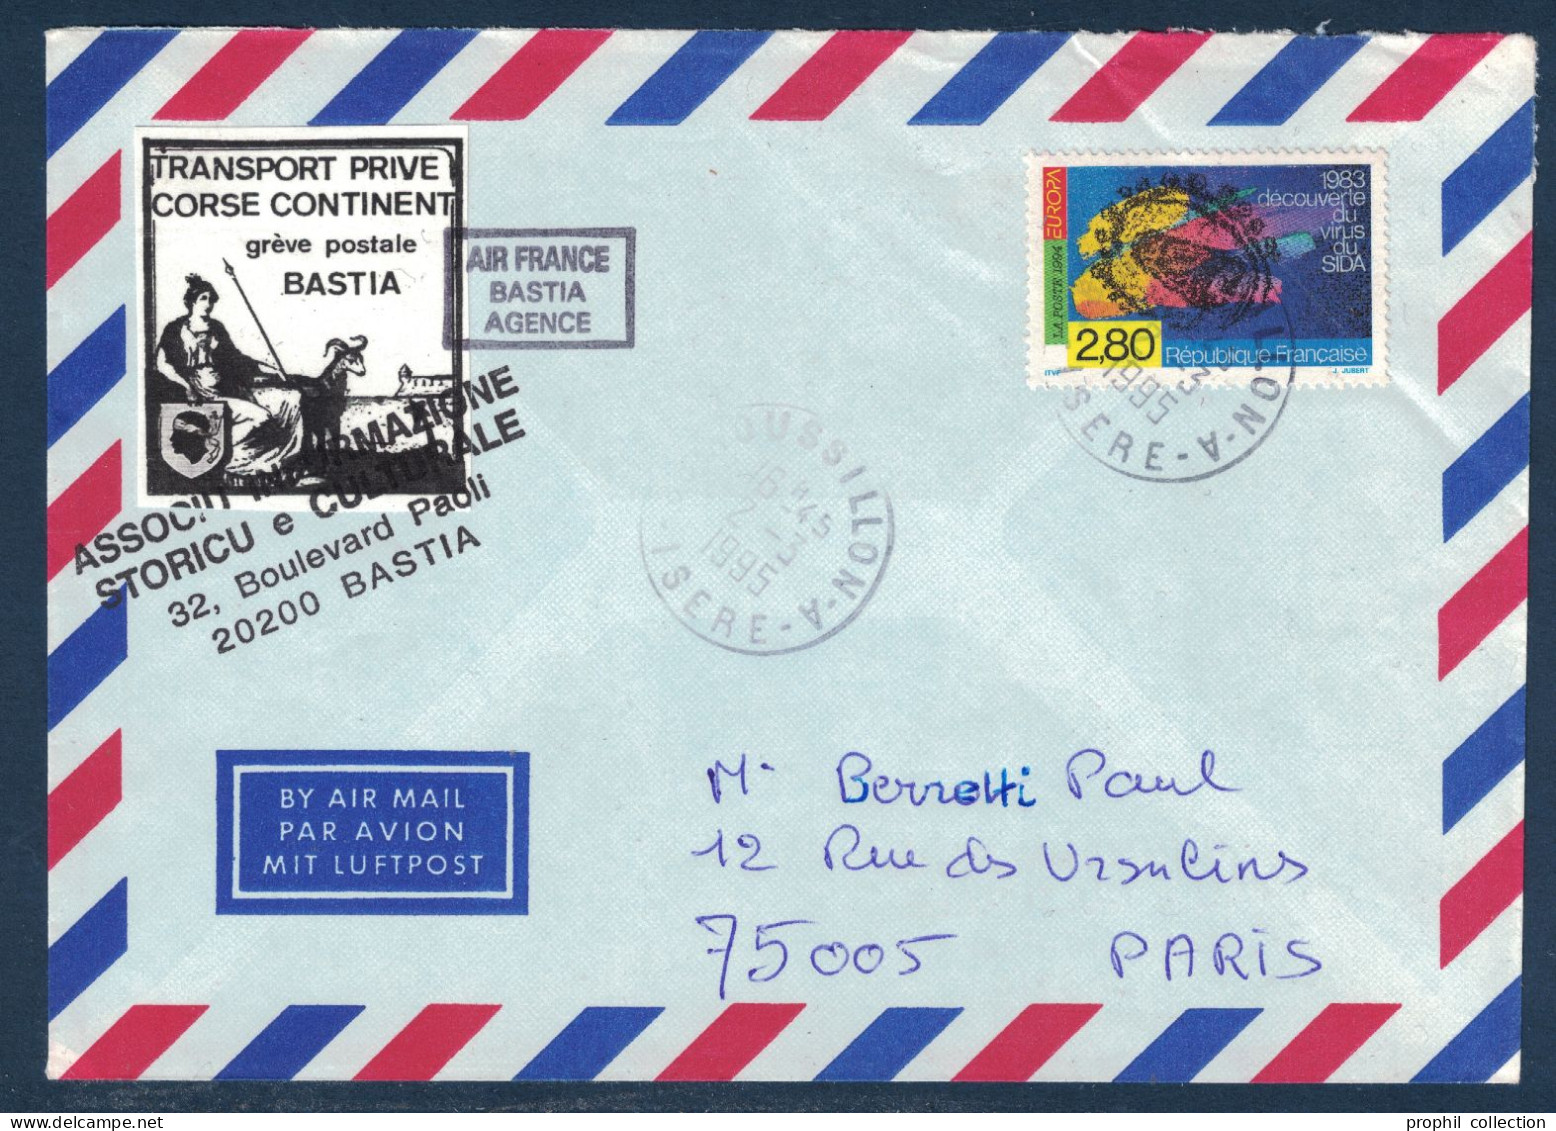 LETTRE GREVE POSTALE BASTIA 1995 VIGNETTE TRANSPORT PRIVÉ CORSE CONTINENT + TIMBRE SIDA Pour PARIS AIR FRANCE AGENCE - Dokumente